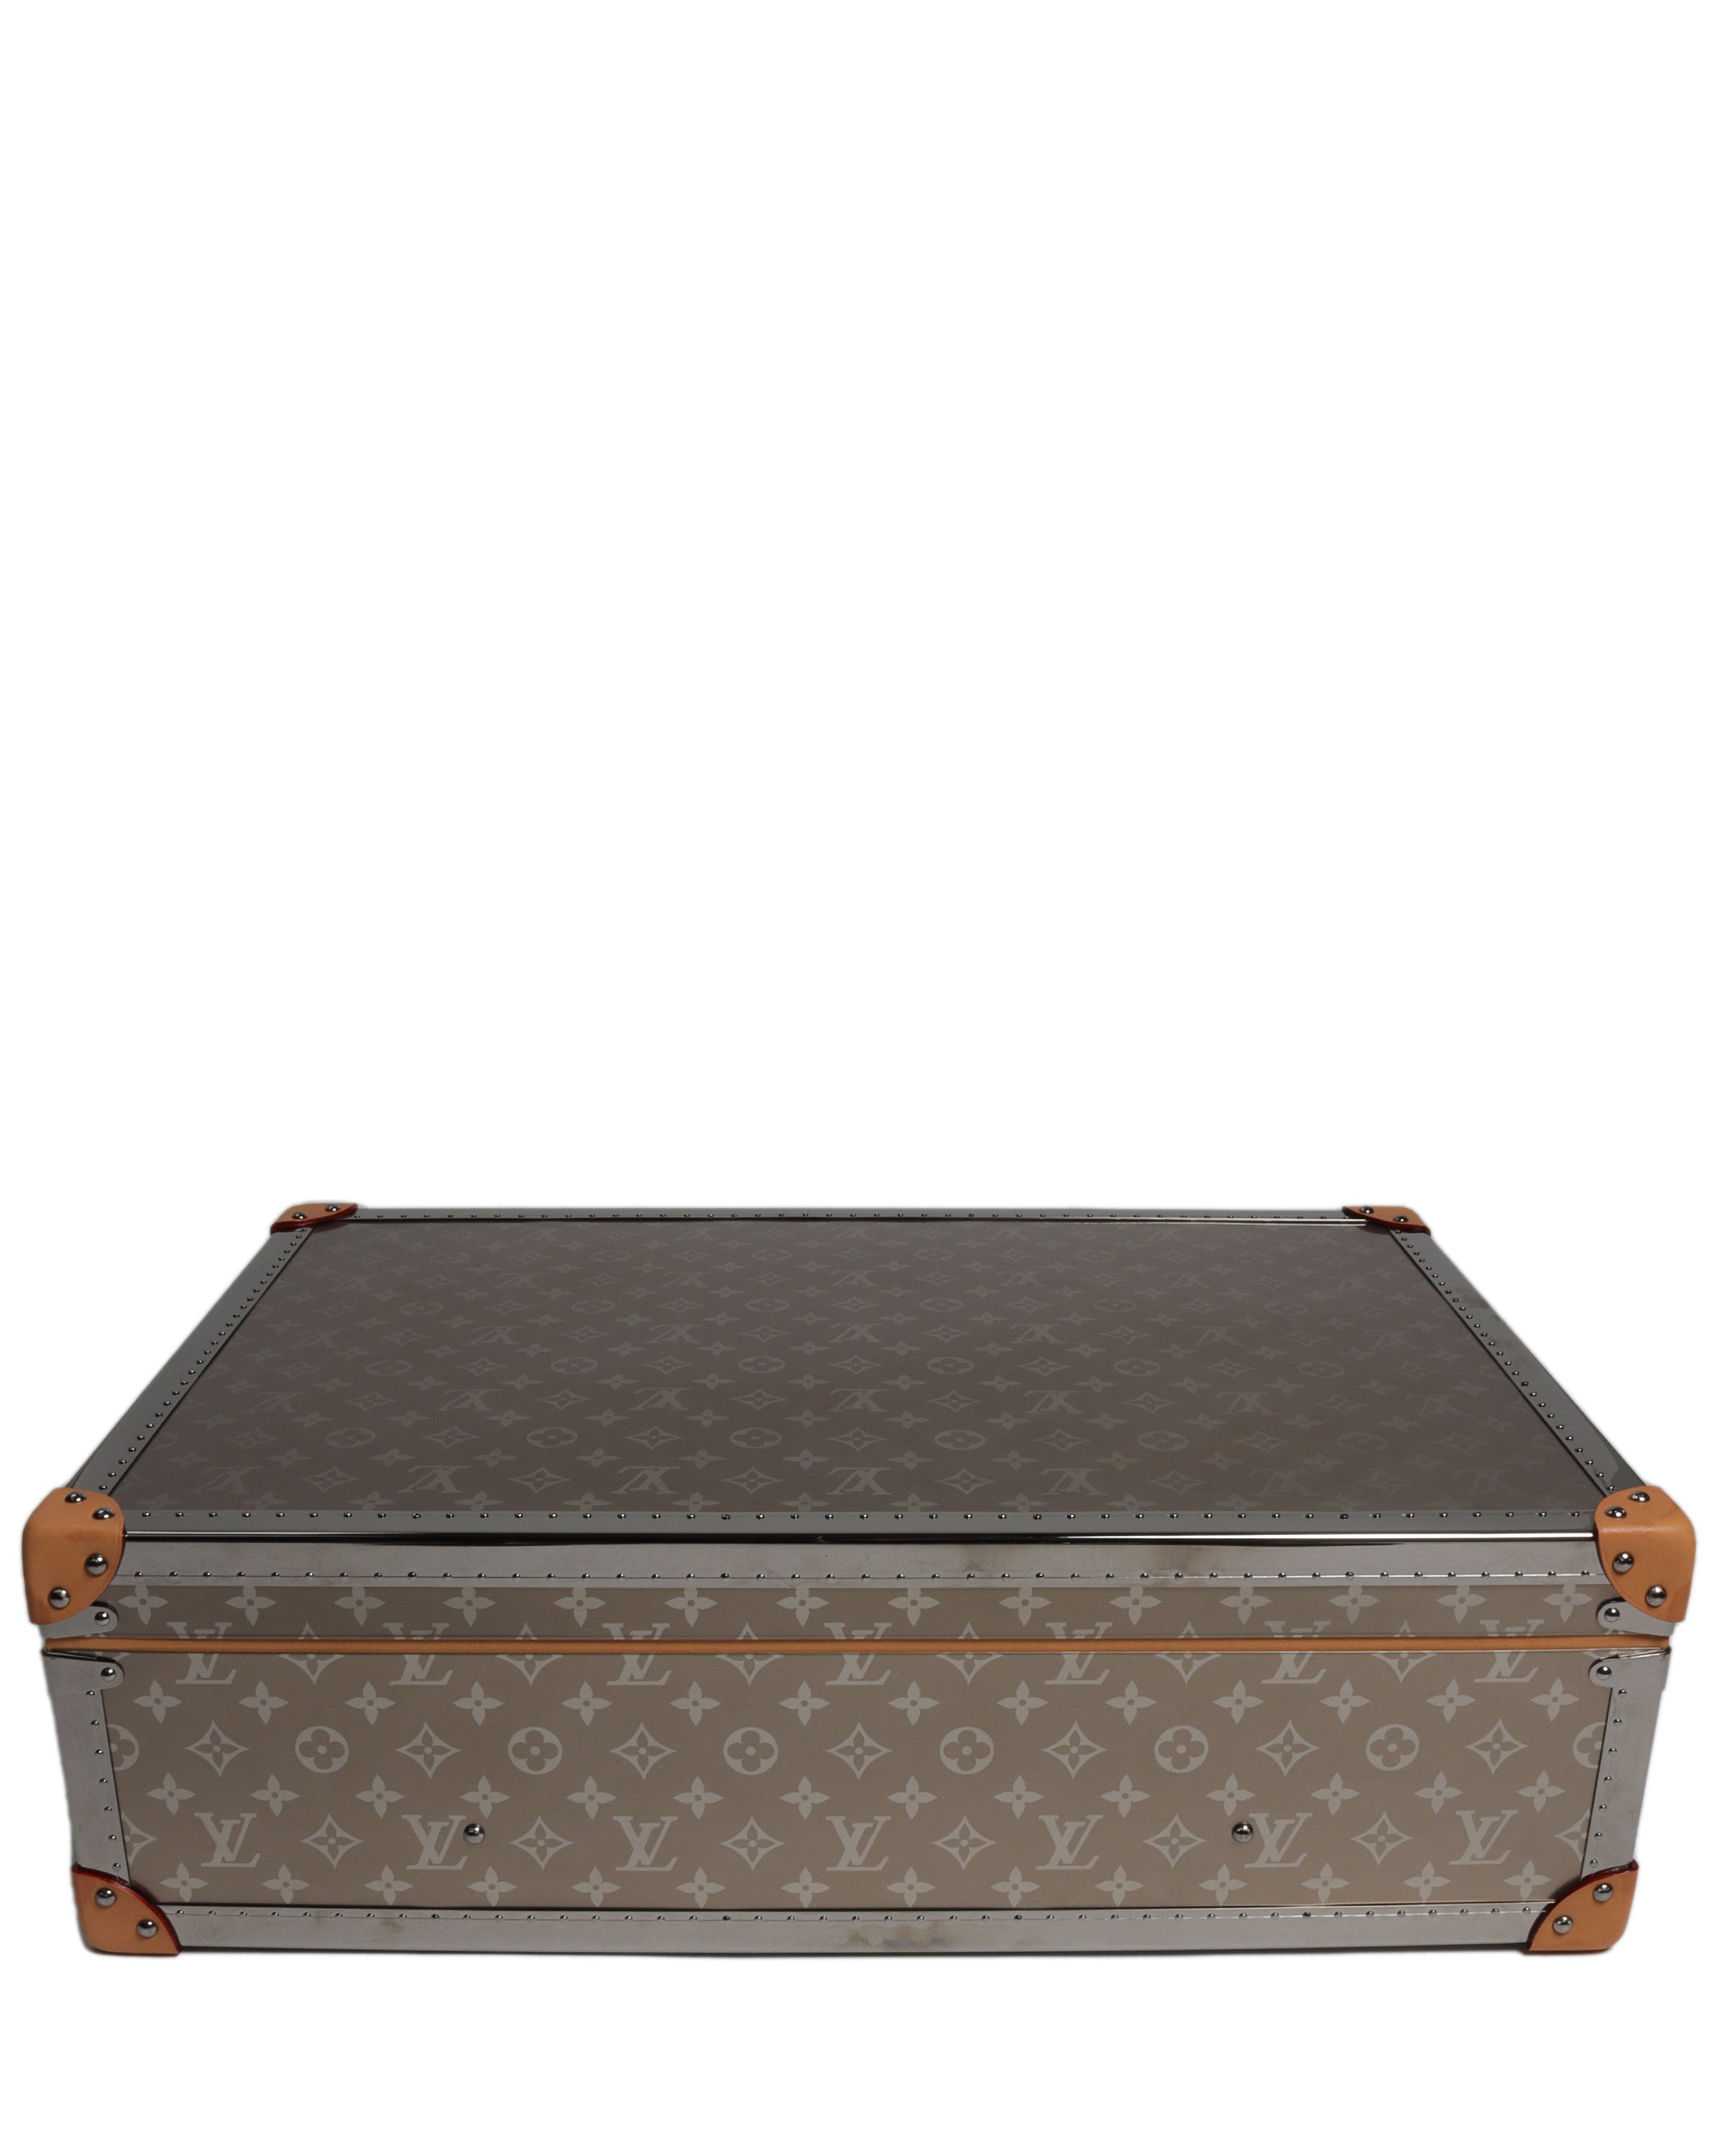 Louis Vuitton Releases Bisten Suitcases in Titanium - Alpha Men Asia